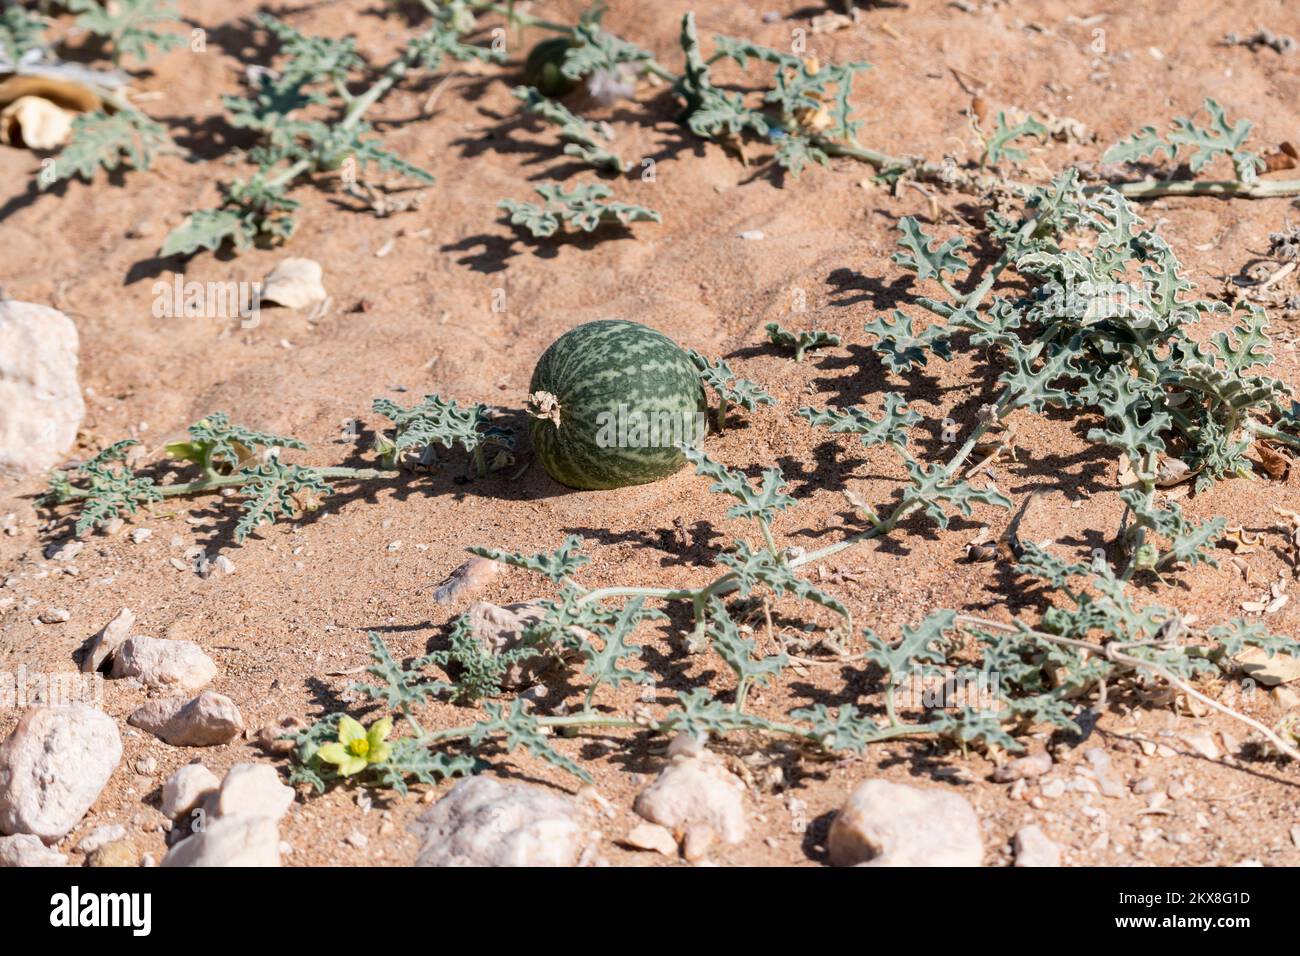 Desert Squash fruit, Globular, apple sized in gravel desert, United Arab Emirates Stock Photo